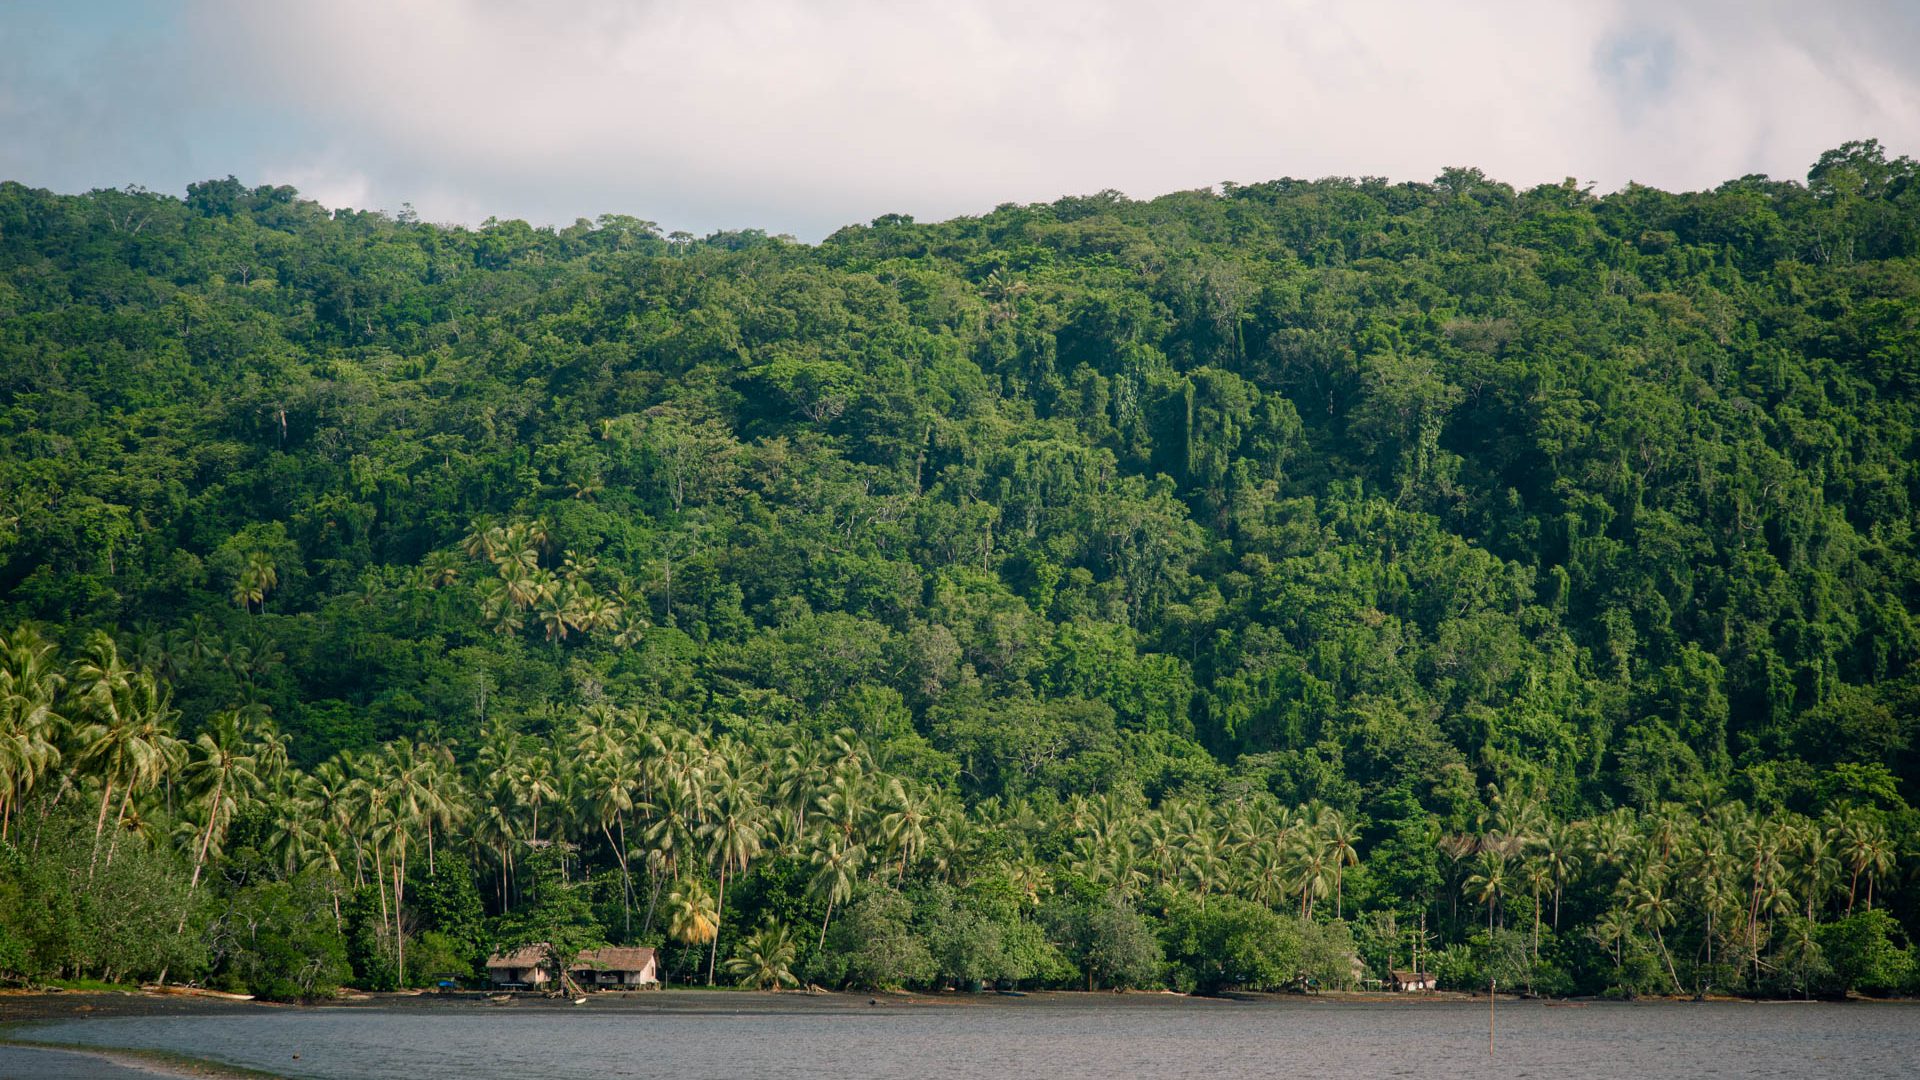 Las casas de madera se sientan frente a la selva tropical cerca del océano.